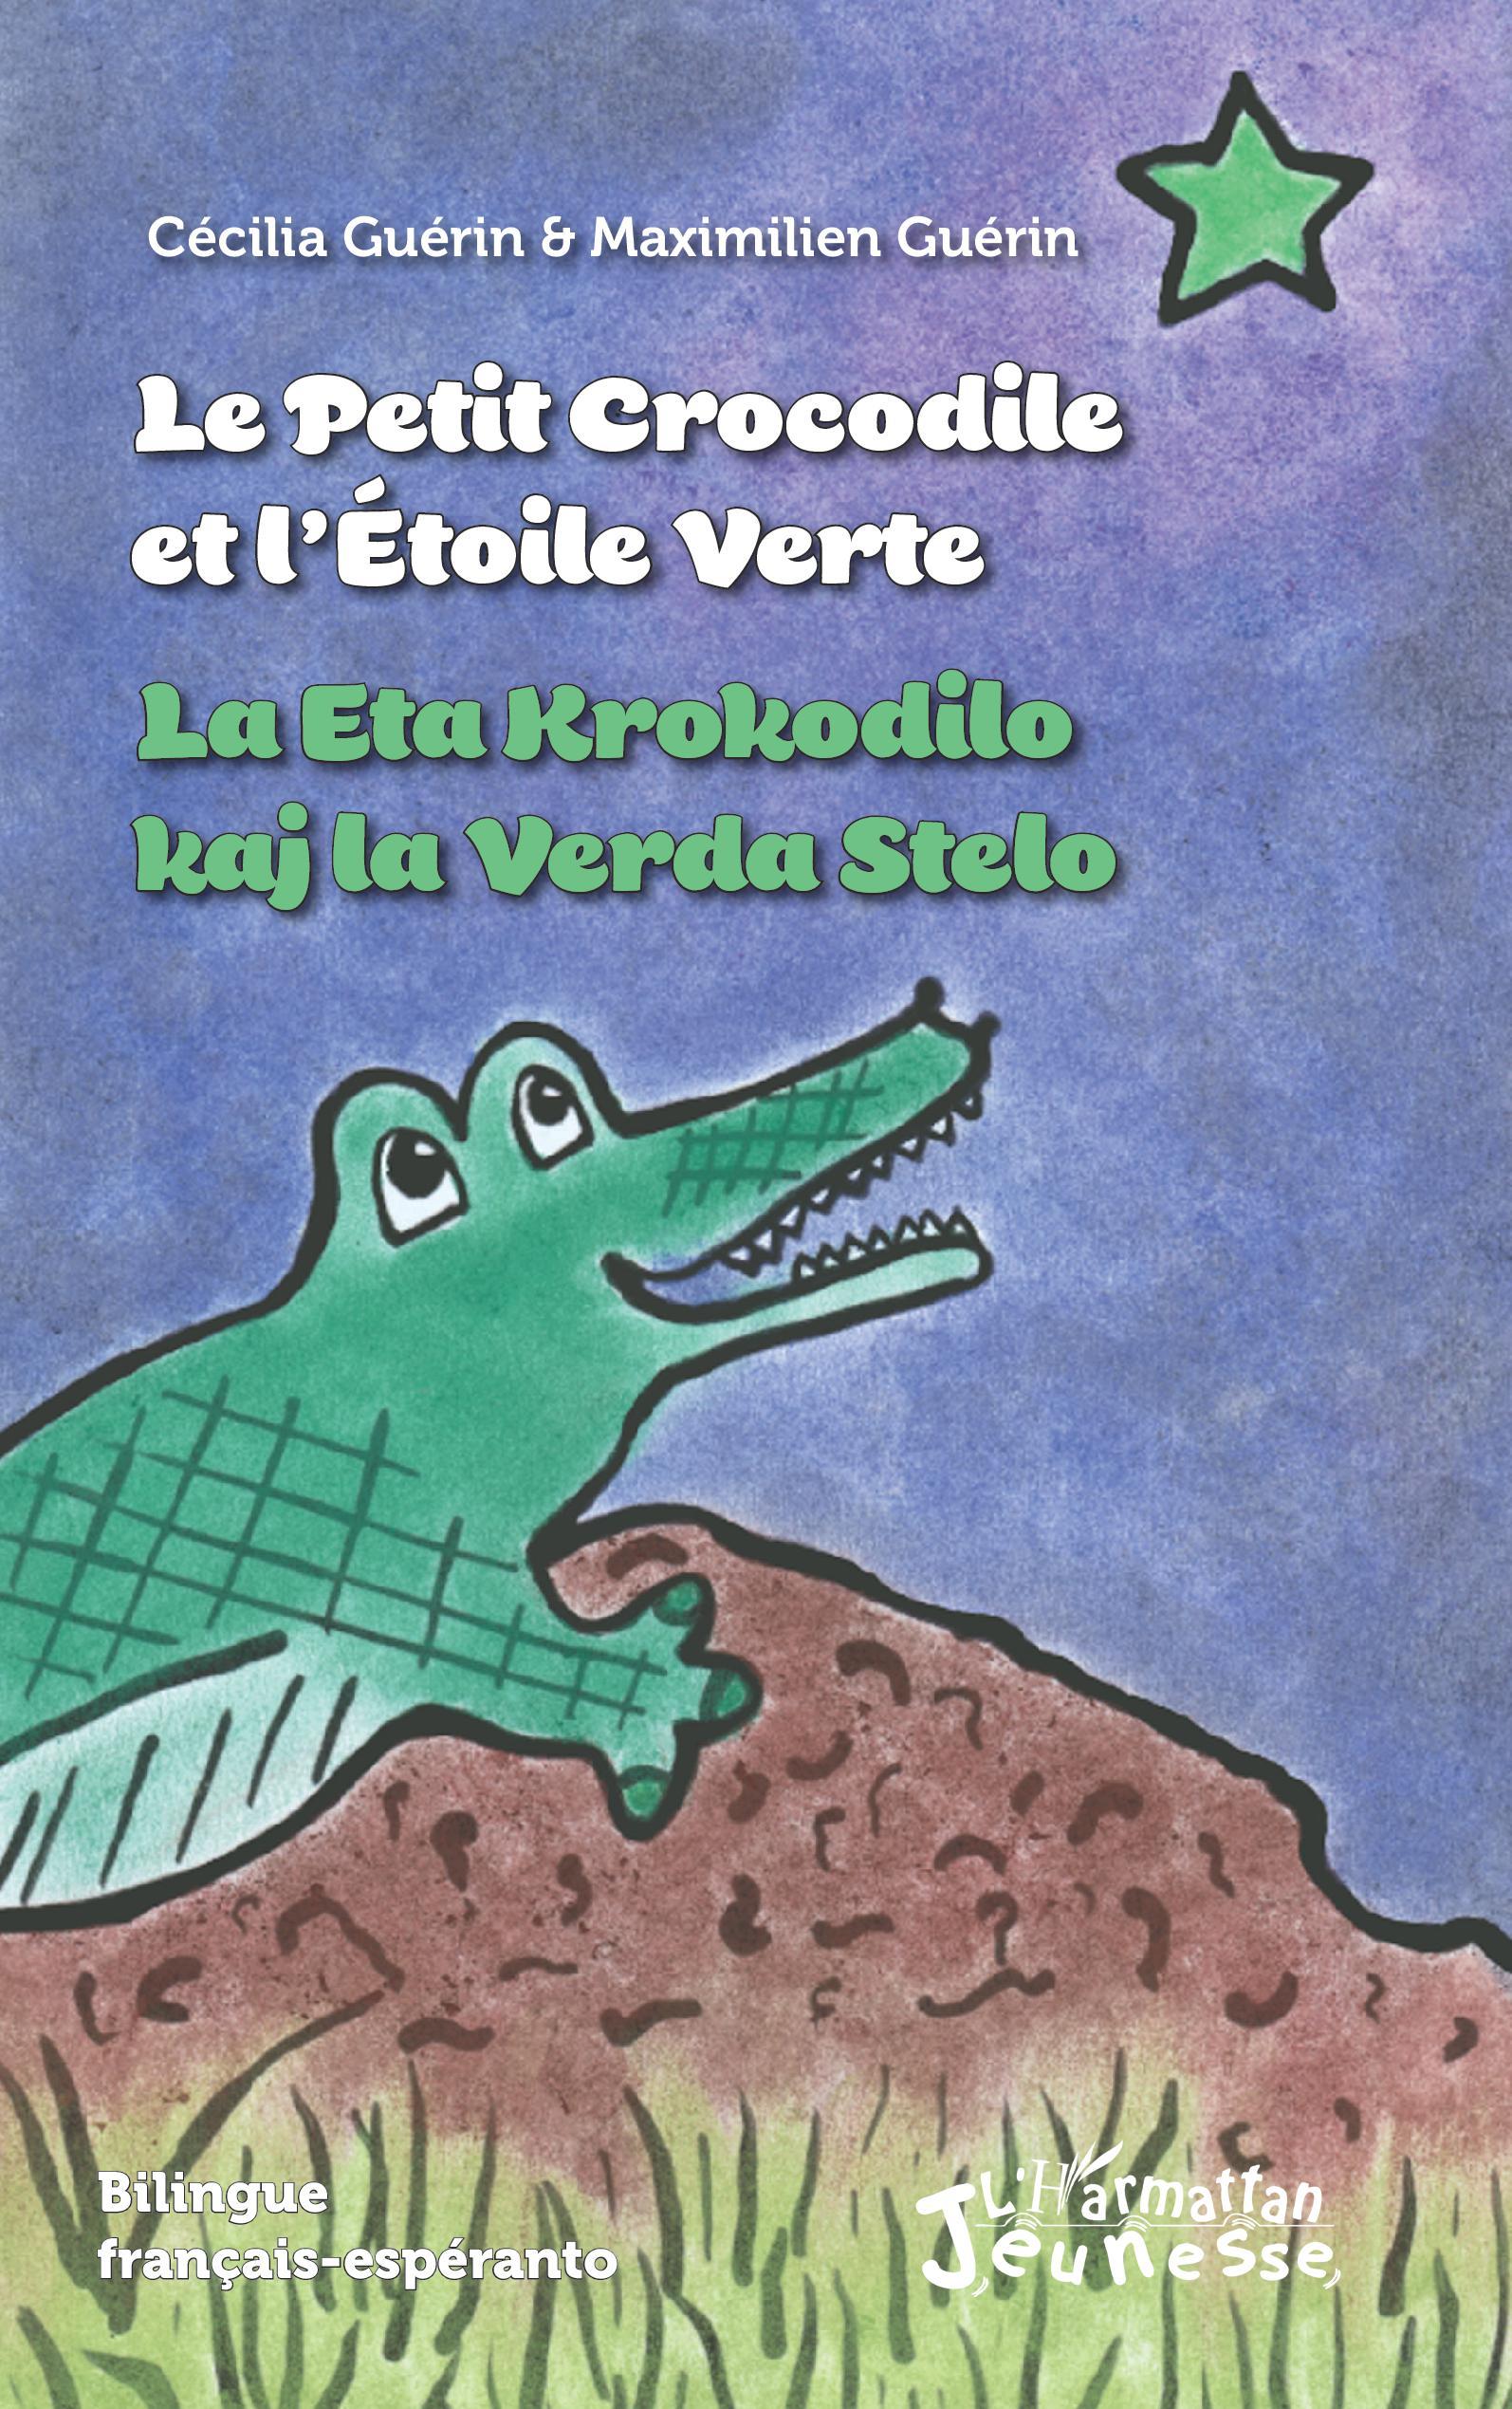 Le petit crocodile et l'Etoile Verte / La Eta Krokodilo kaj la Verda Stelo (9782343231174-front-cover)